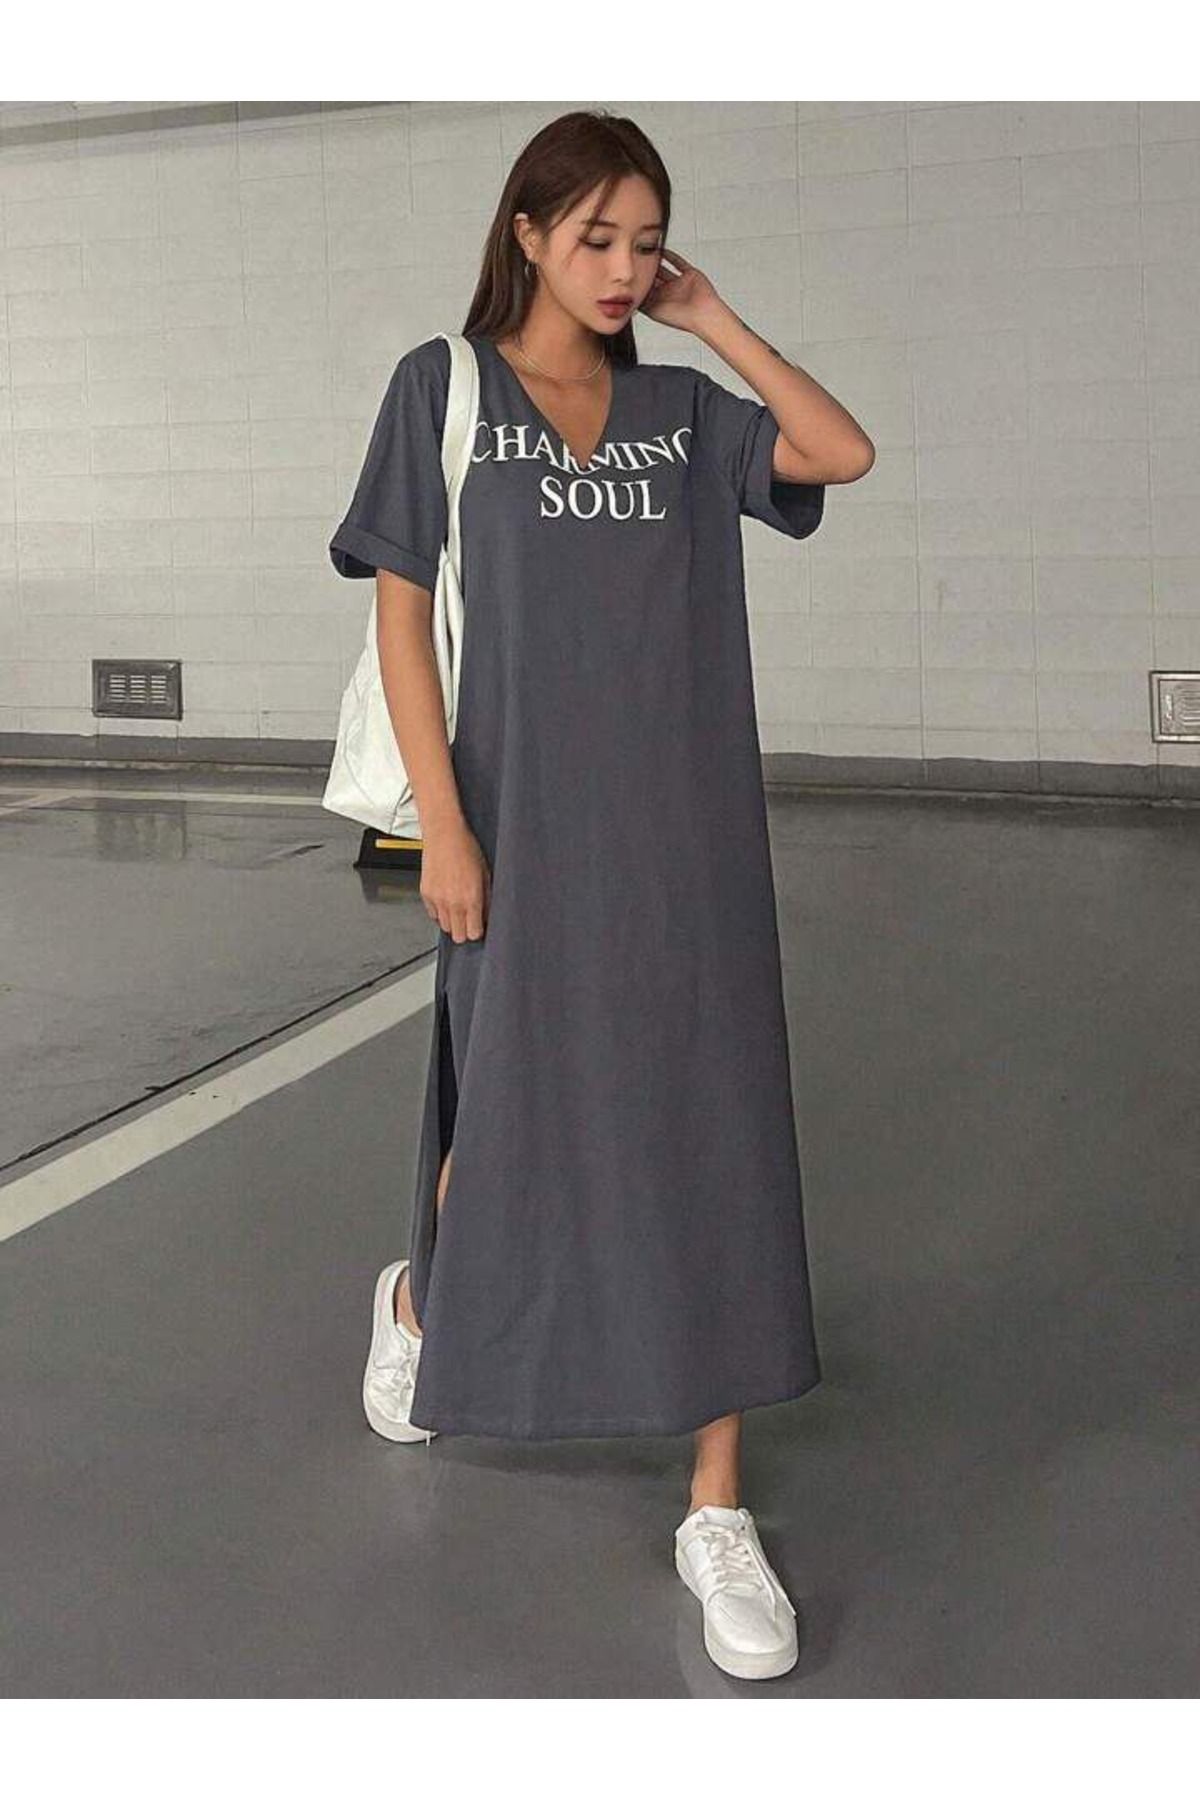 Machetta Kadın Charming Soul Baskılı V Yaka T-shirt Elbise/tunik